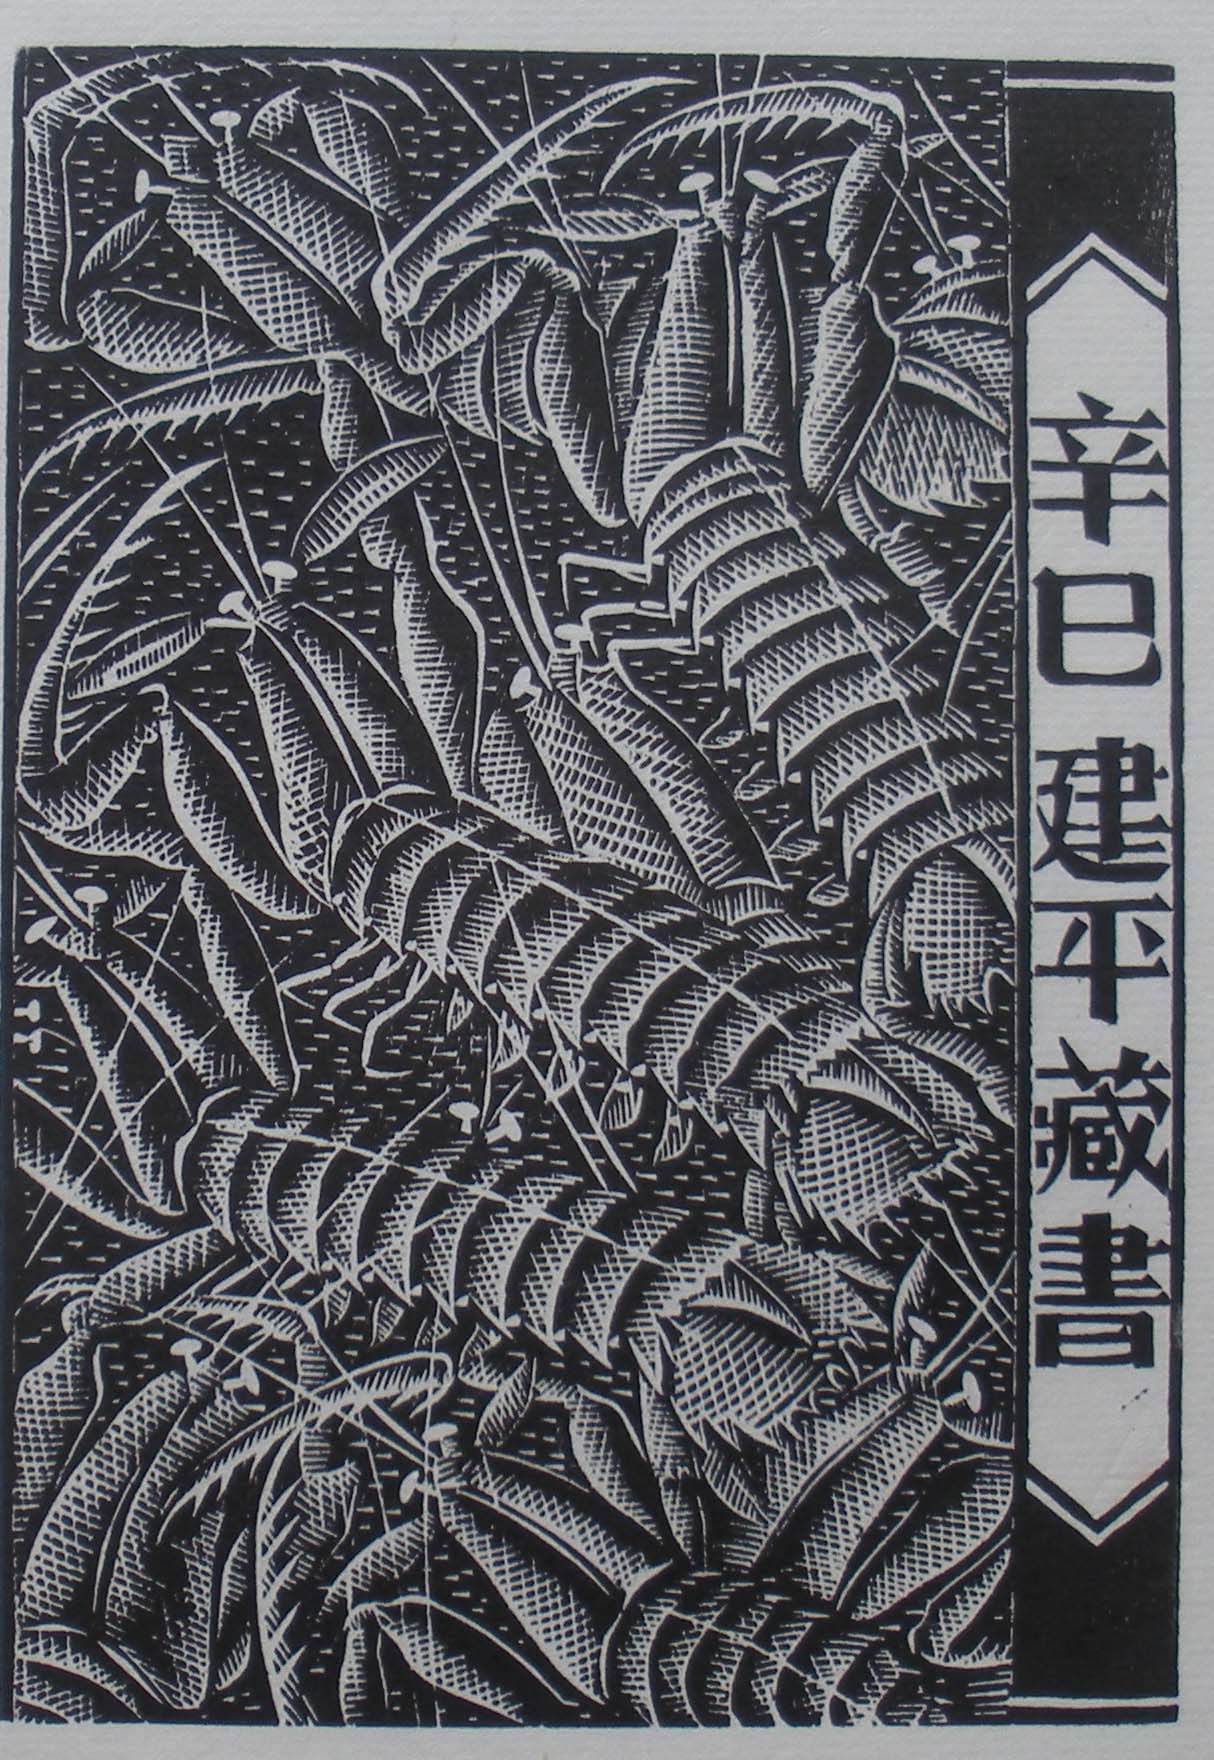 藏书票植物黑白灰图片